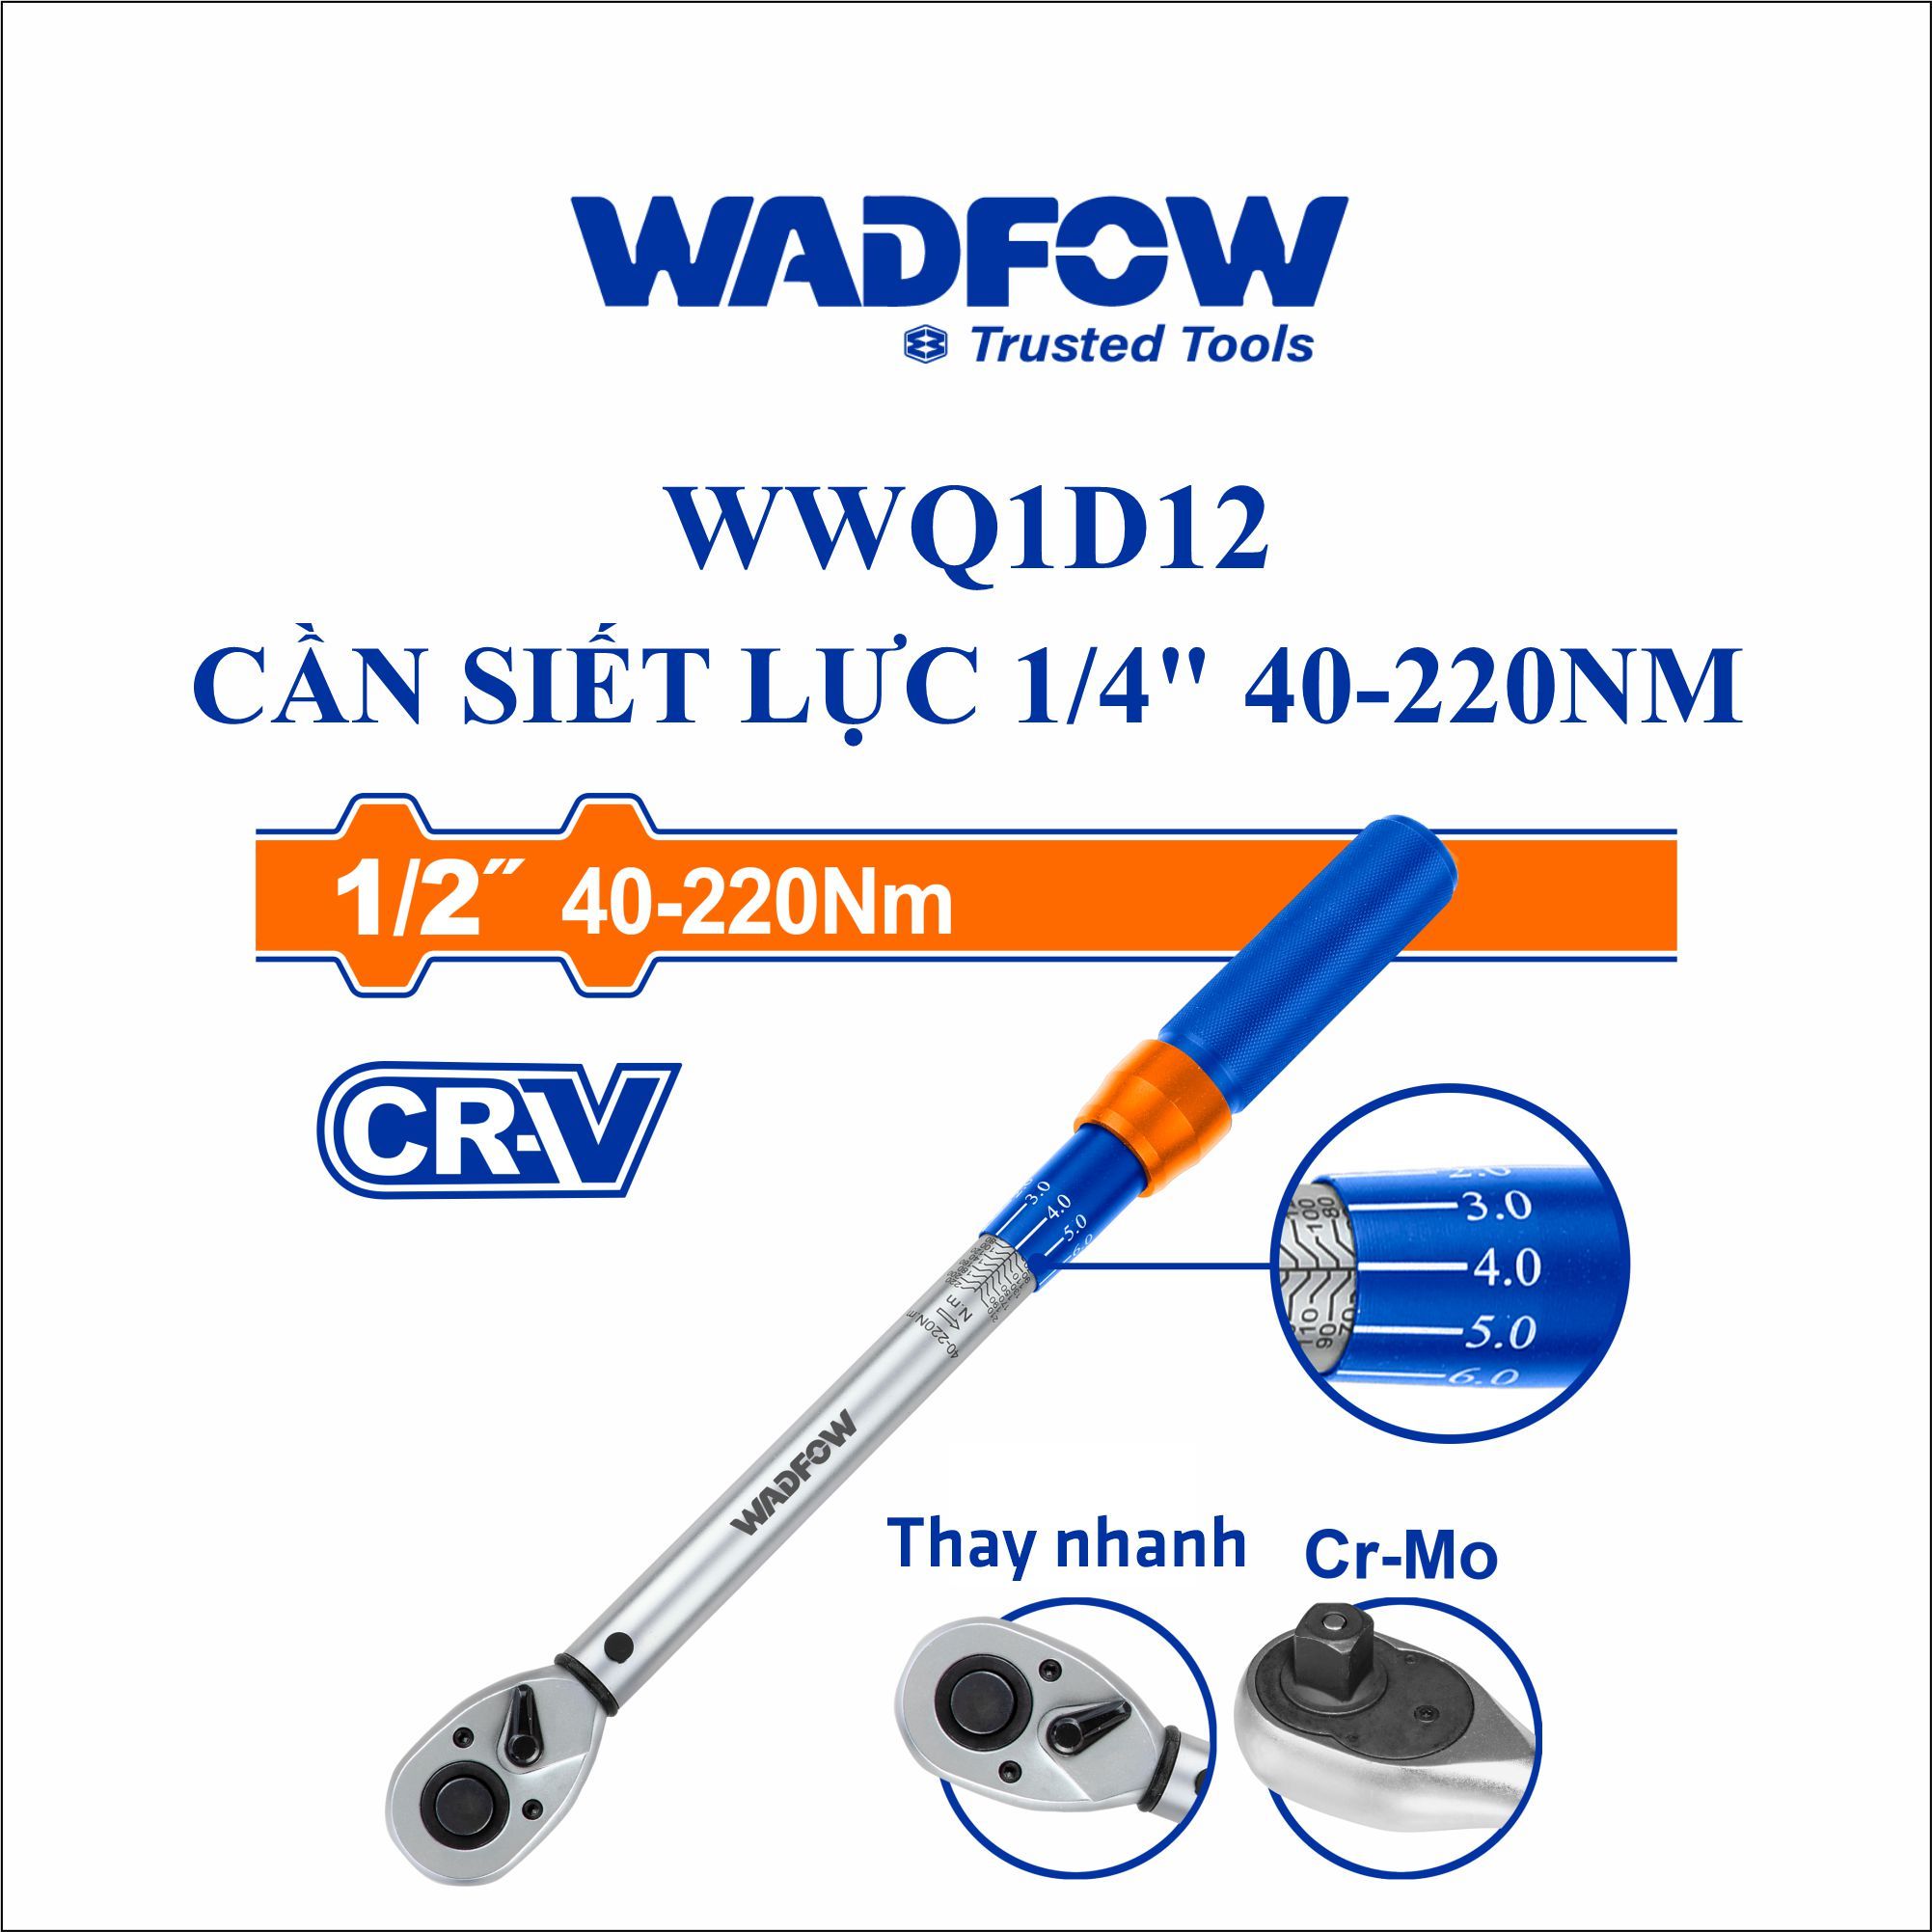  Cần siết lực 1/4 Inch 40-220Nm WADFOW WWQ1D12 